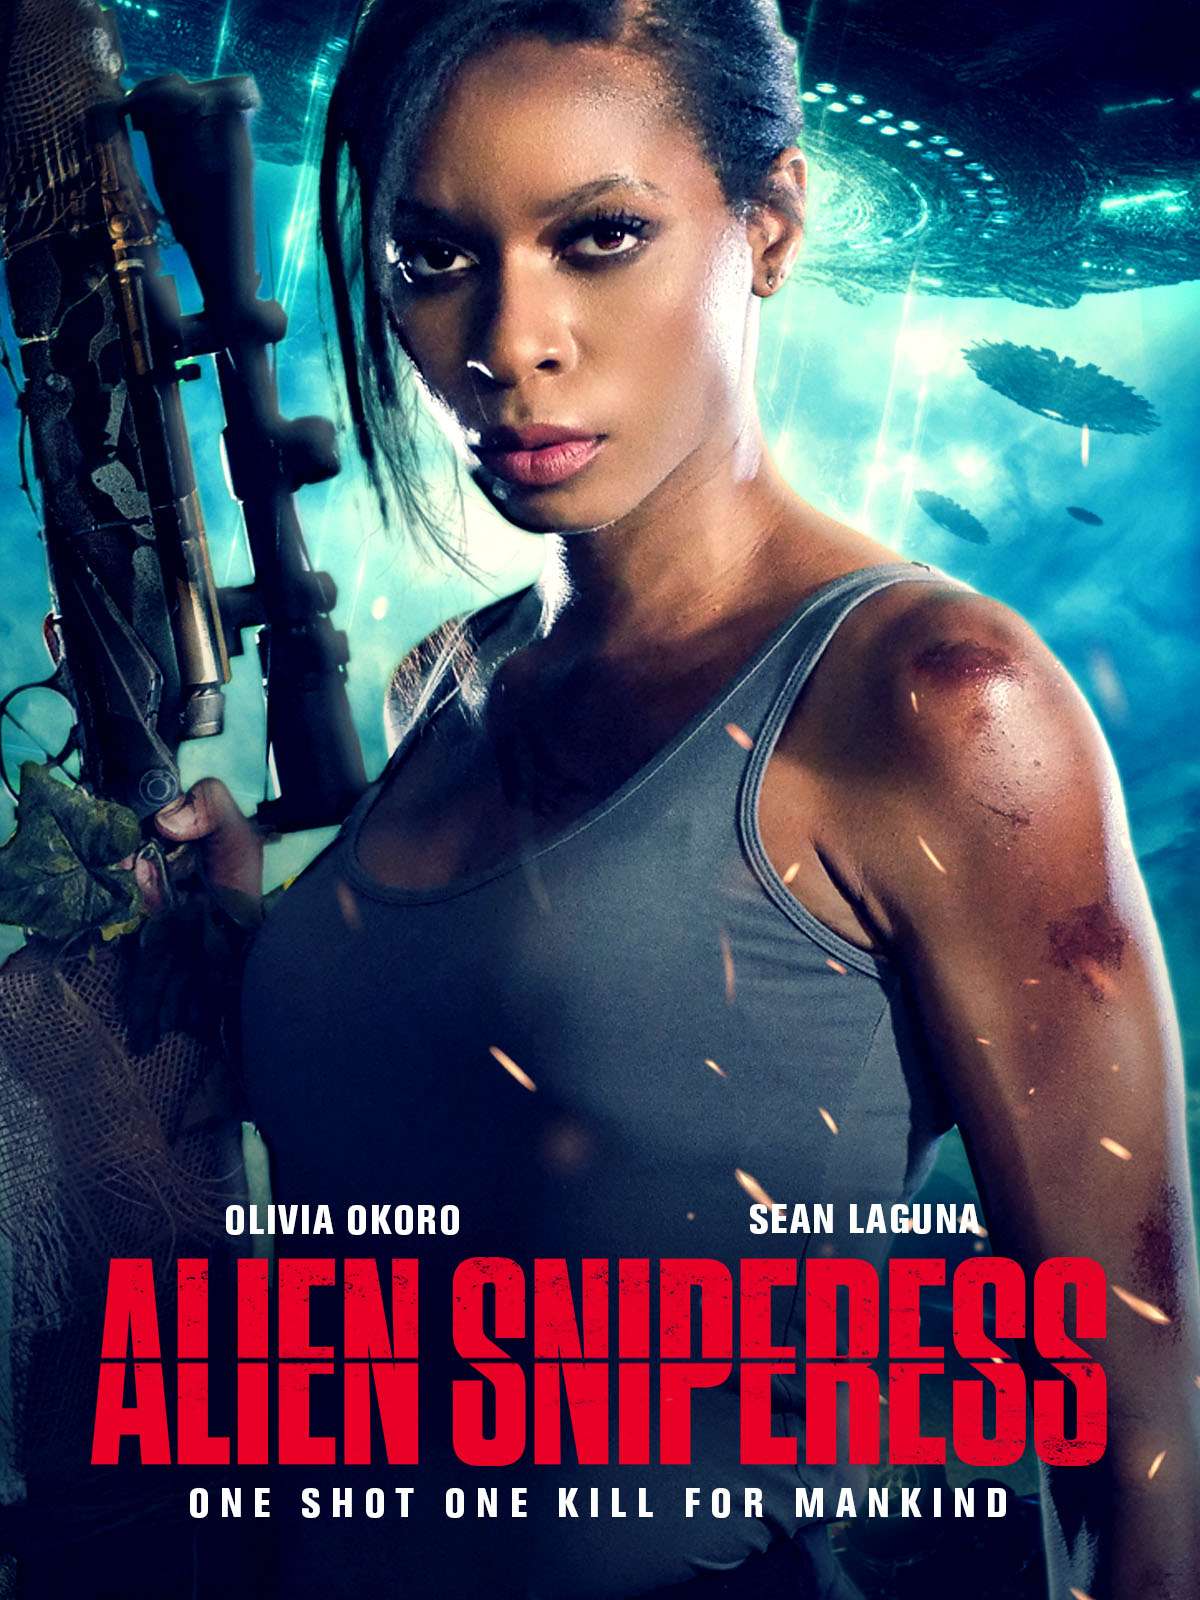 فيلم Alien Sniperess 2022 مترجم كامل HD